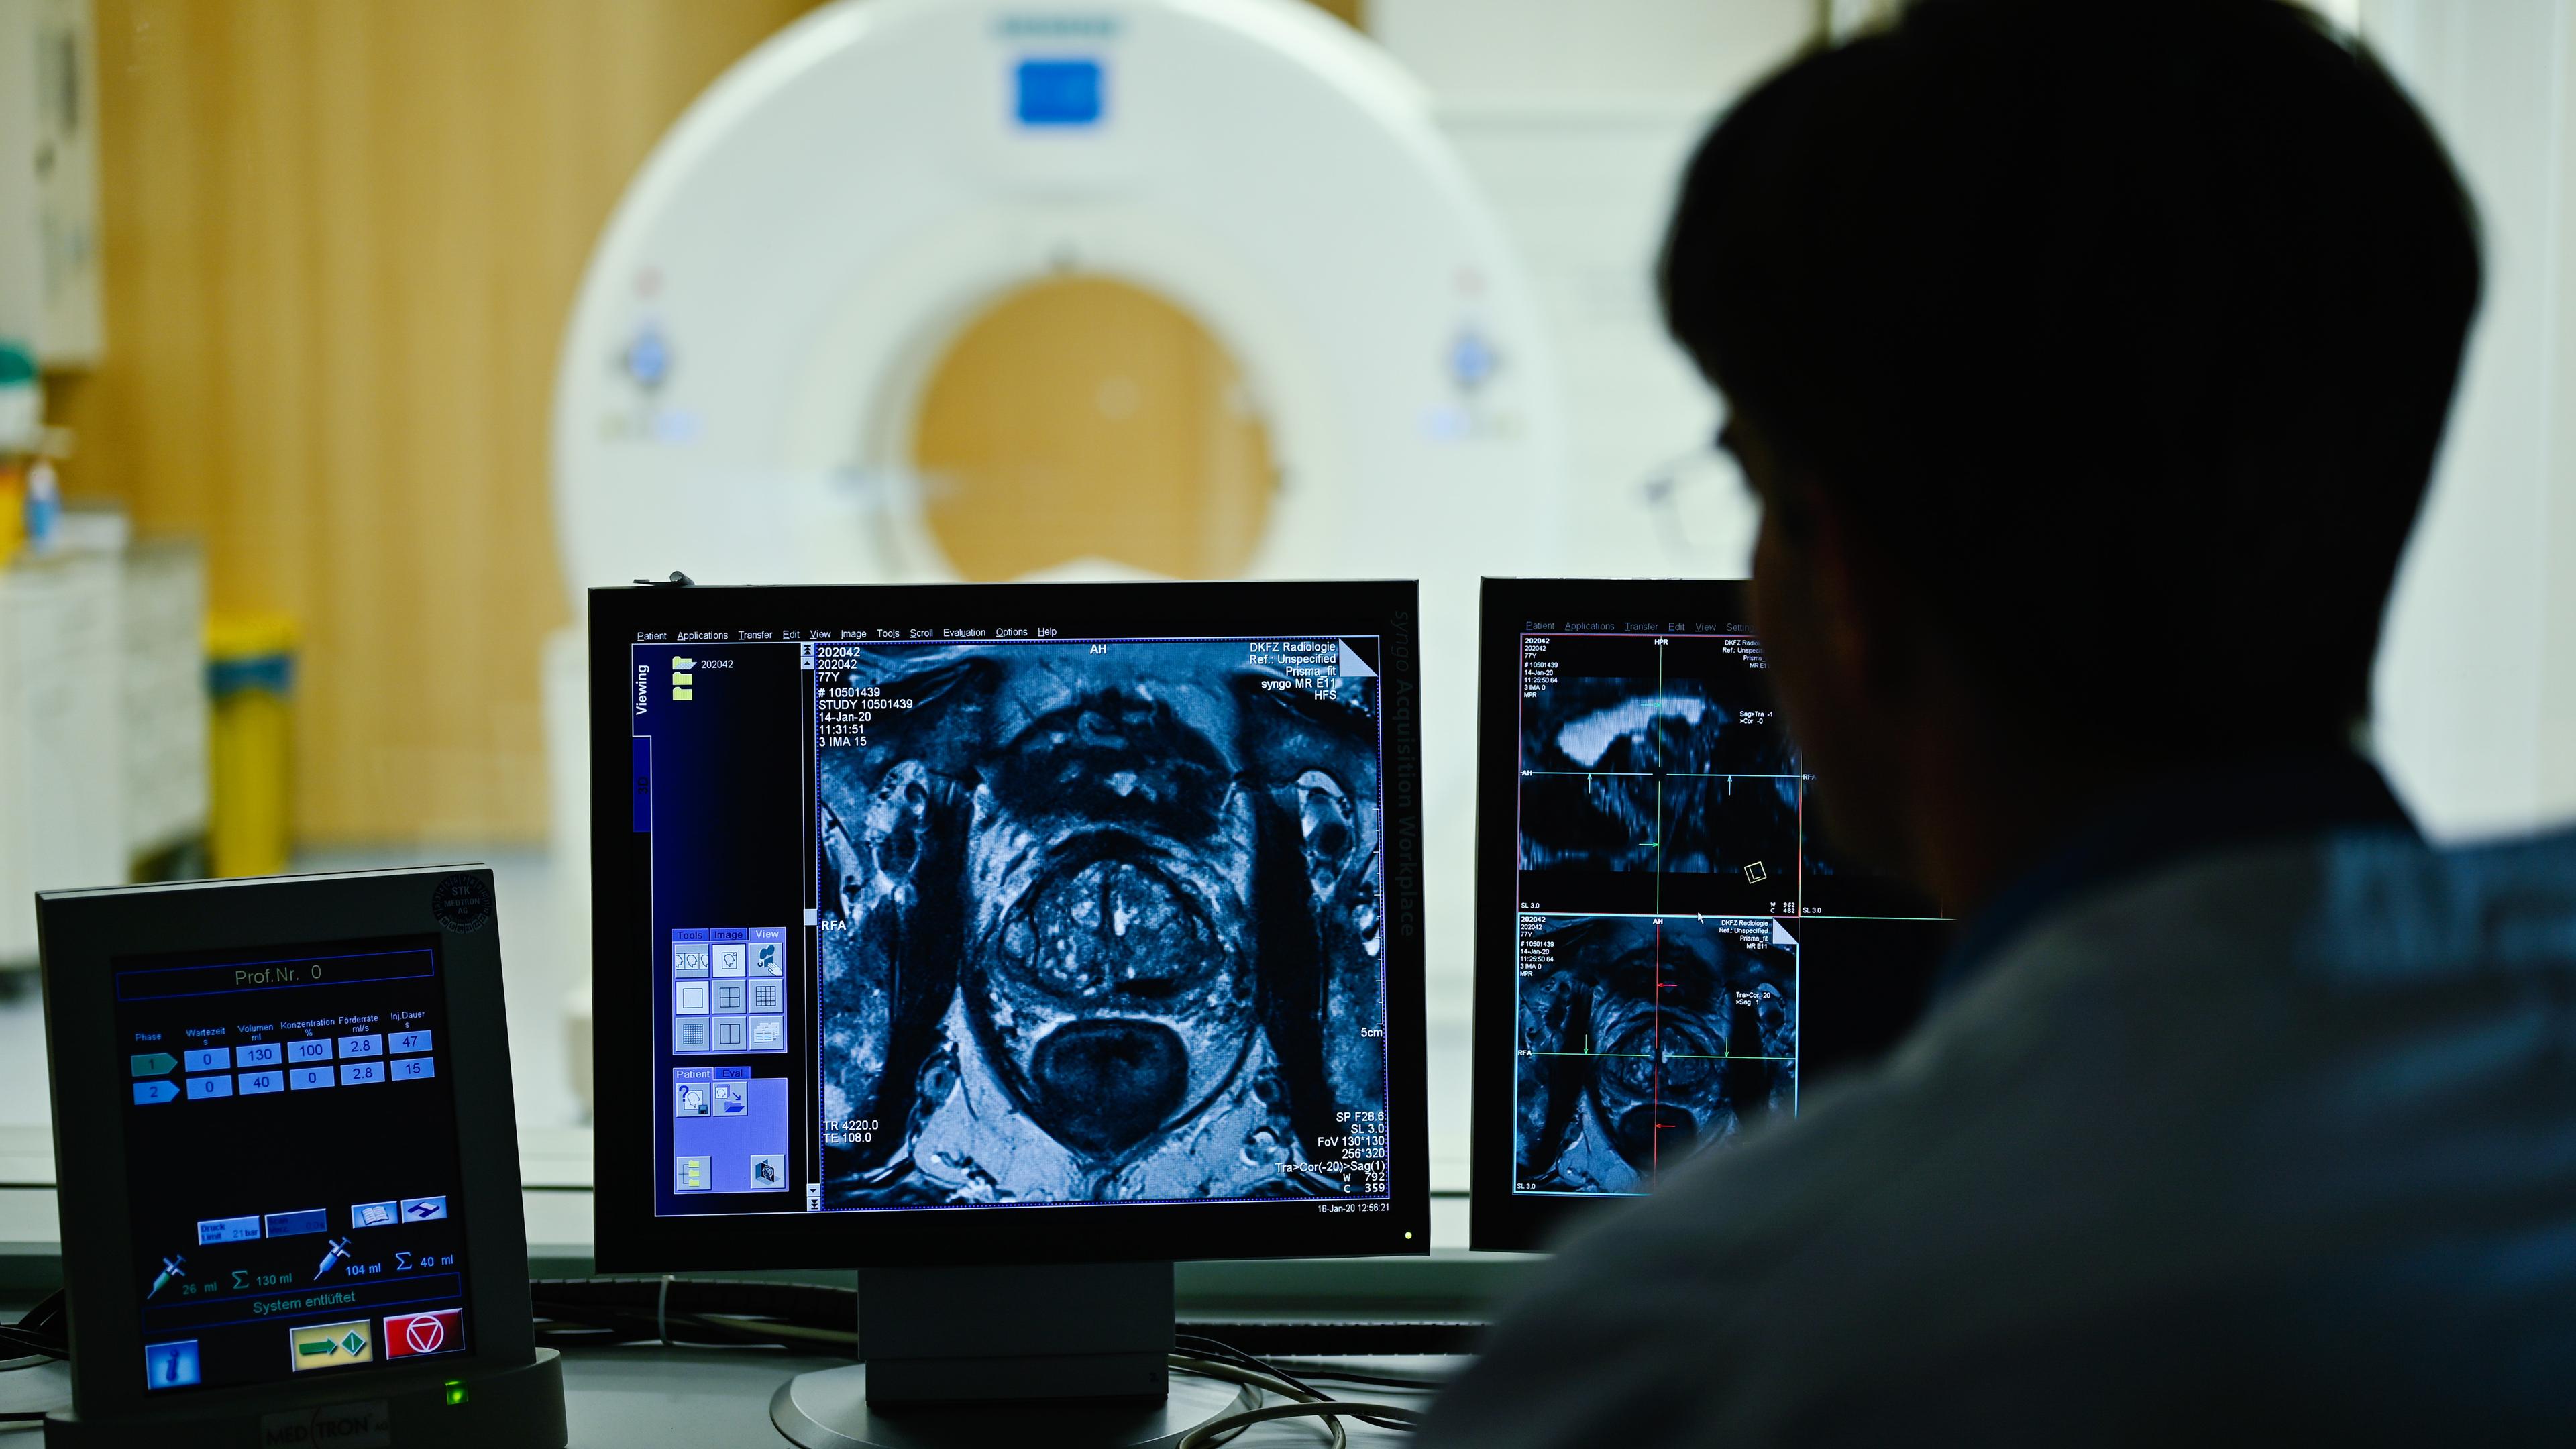 Ein Mitarbeiter betrachtet in einem Kontrollraum des Deutschen Krebsforschungszentrum (DKFZ) auf einem Monitor das Querschnittsbild einer Prostata.